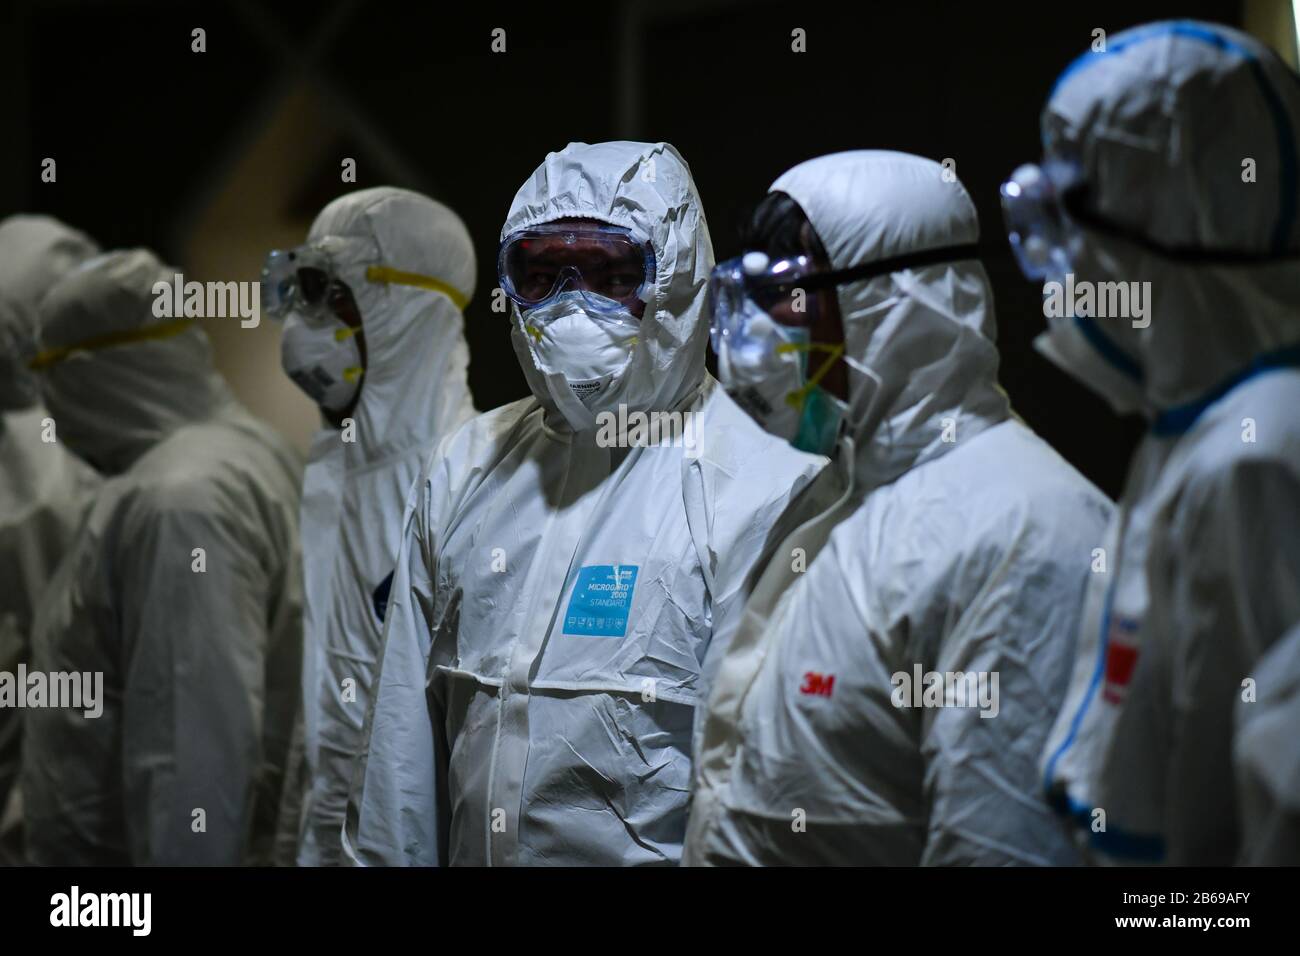 Bangkok, Thailand. März 2020. Desinfektion von Personen, die Schutzanzüge und Maske tragen, als Vorbeugungsmaßnahme gegen den neuartigen Corona-Virus.Das Büro der Weltgesundheitsorganisation (WHO) Thailand berichtete, dass die Gesamtzahl der bestätigten COVID-19-Fälle, die in Thailand dokumentiert wurden, 50 Personen beträgt, von denen 33 erholt wurden, 16 im Krankenhaus und ein Toter. Credit: Sopa Images Limited/Alamy Live News Stockfoto